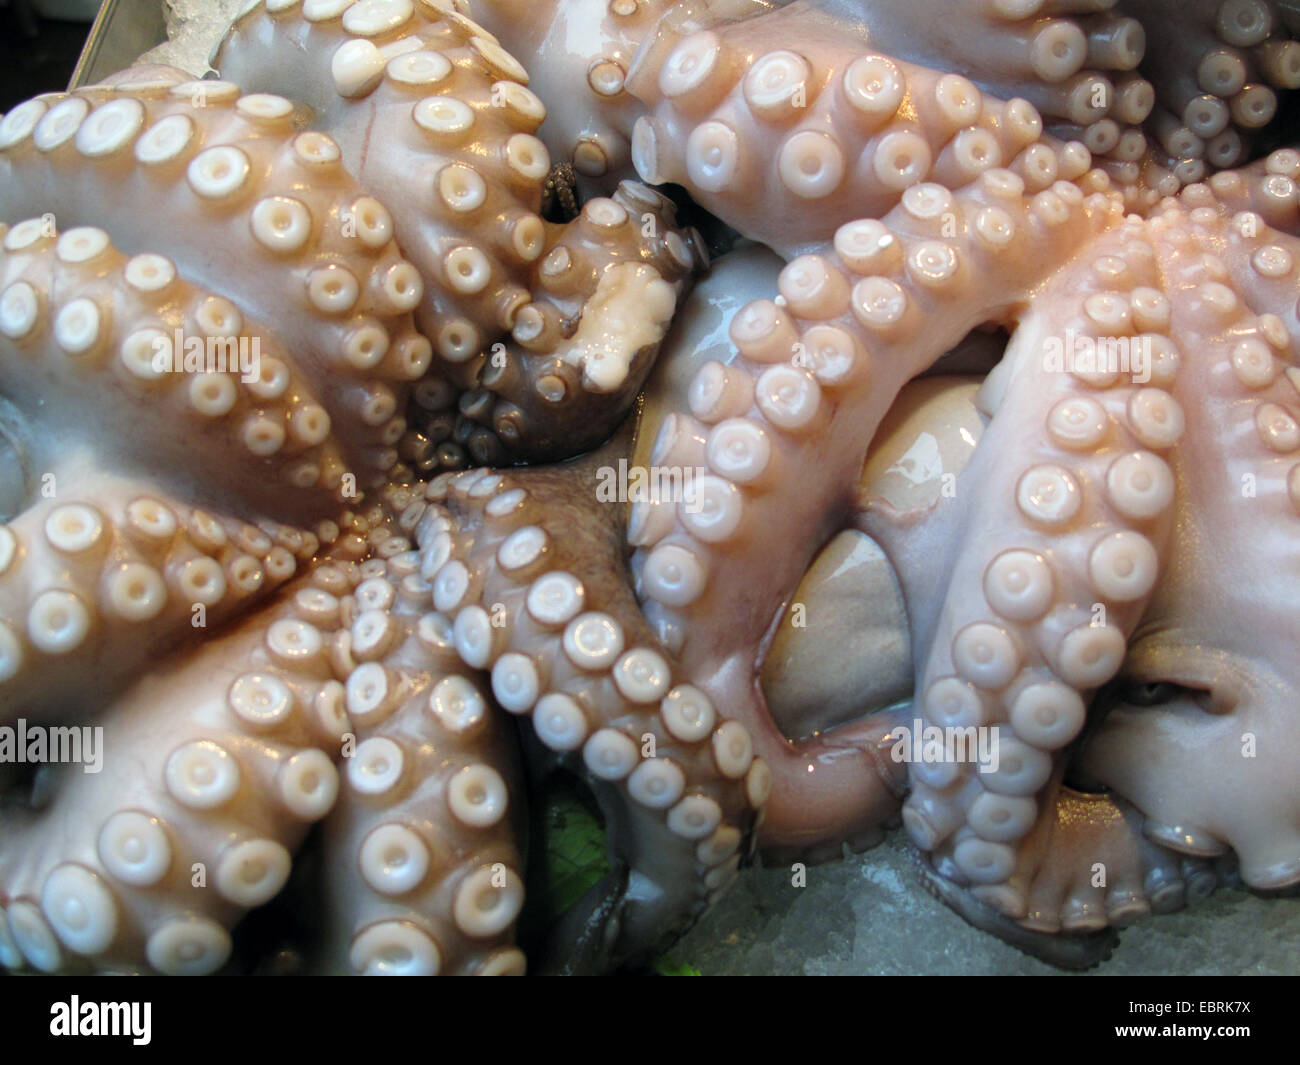 Poulpe commun, Octopus, Atlantique commun européen commun poulpe (Octopus vulgaris), frais pêché et frappé légèrement sur la glace Banque D'Images